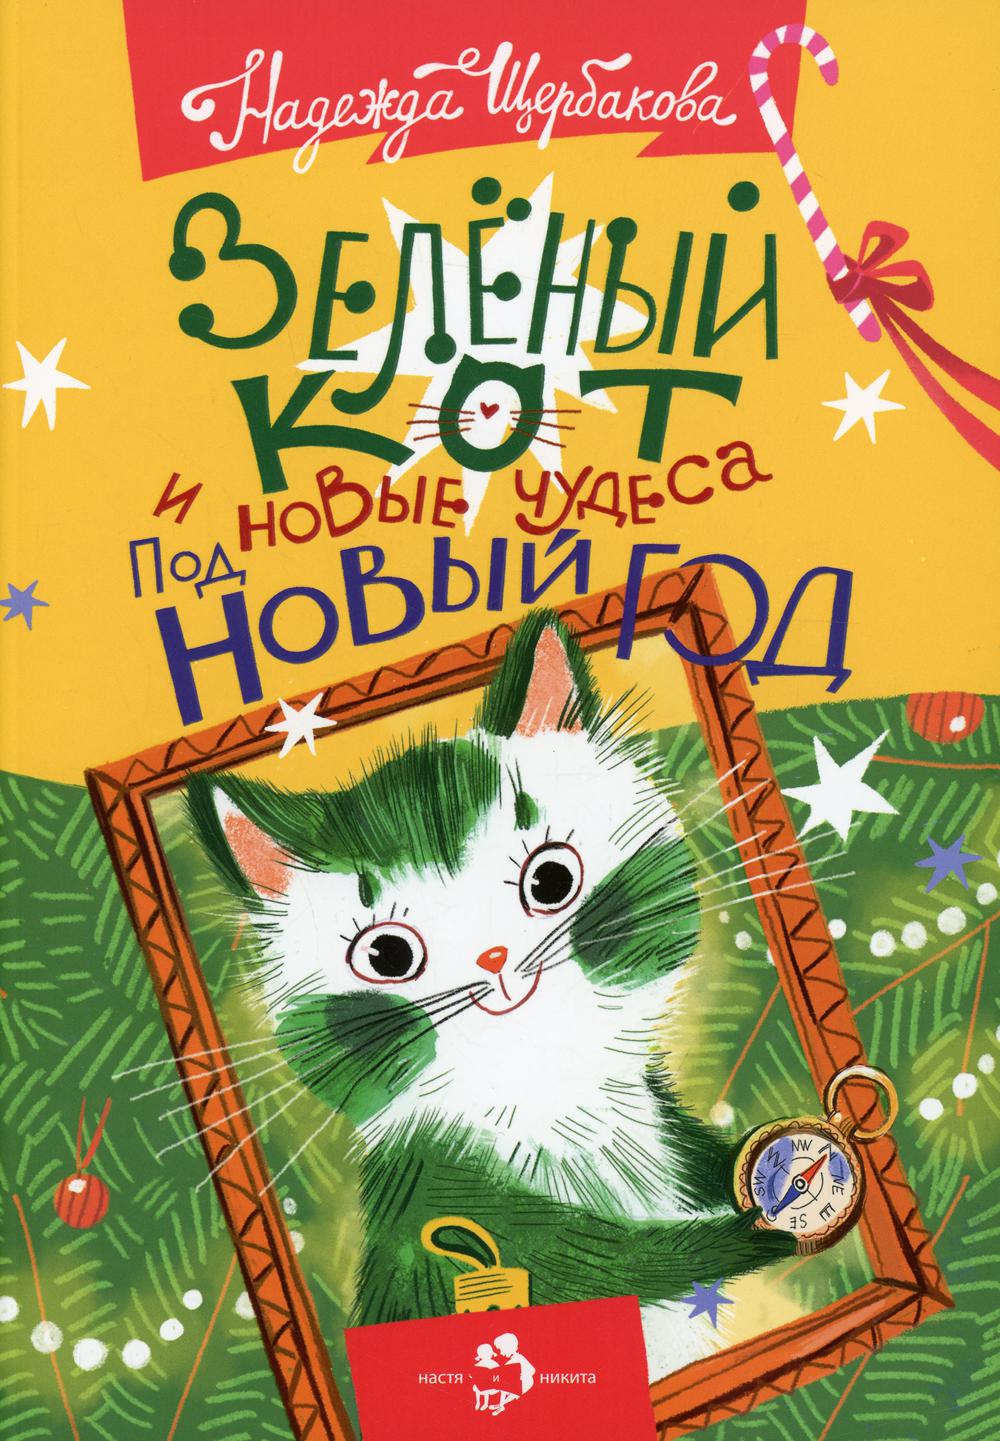 фото Книга зеленый кот и новые чудеса под новый год настя и никита